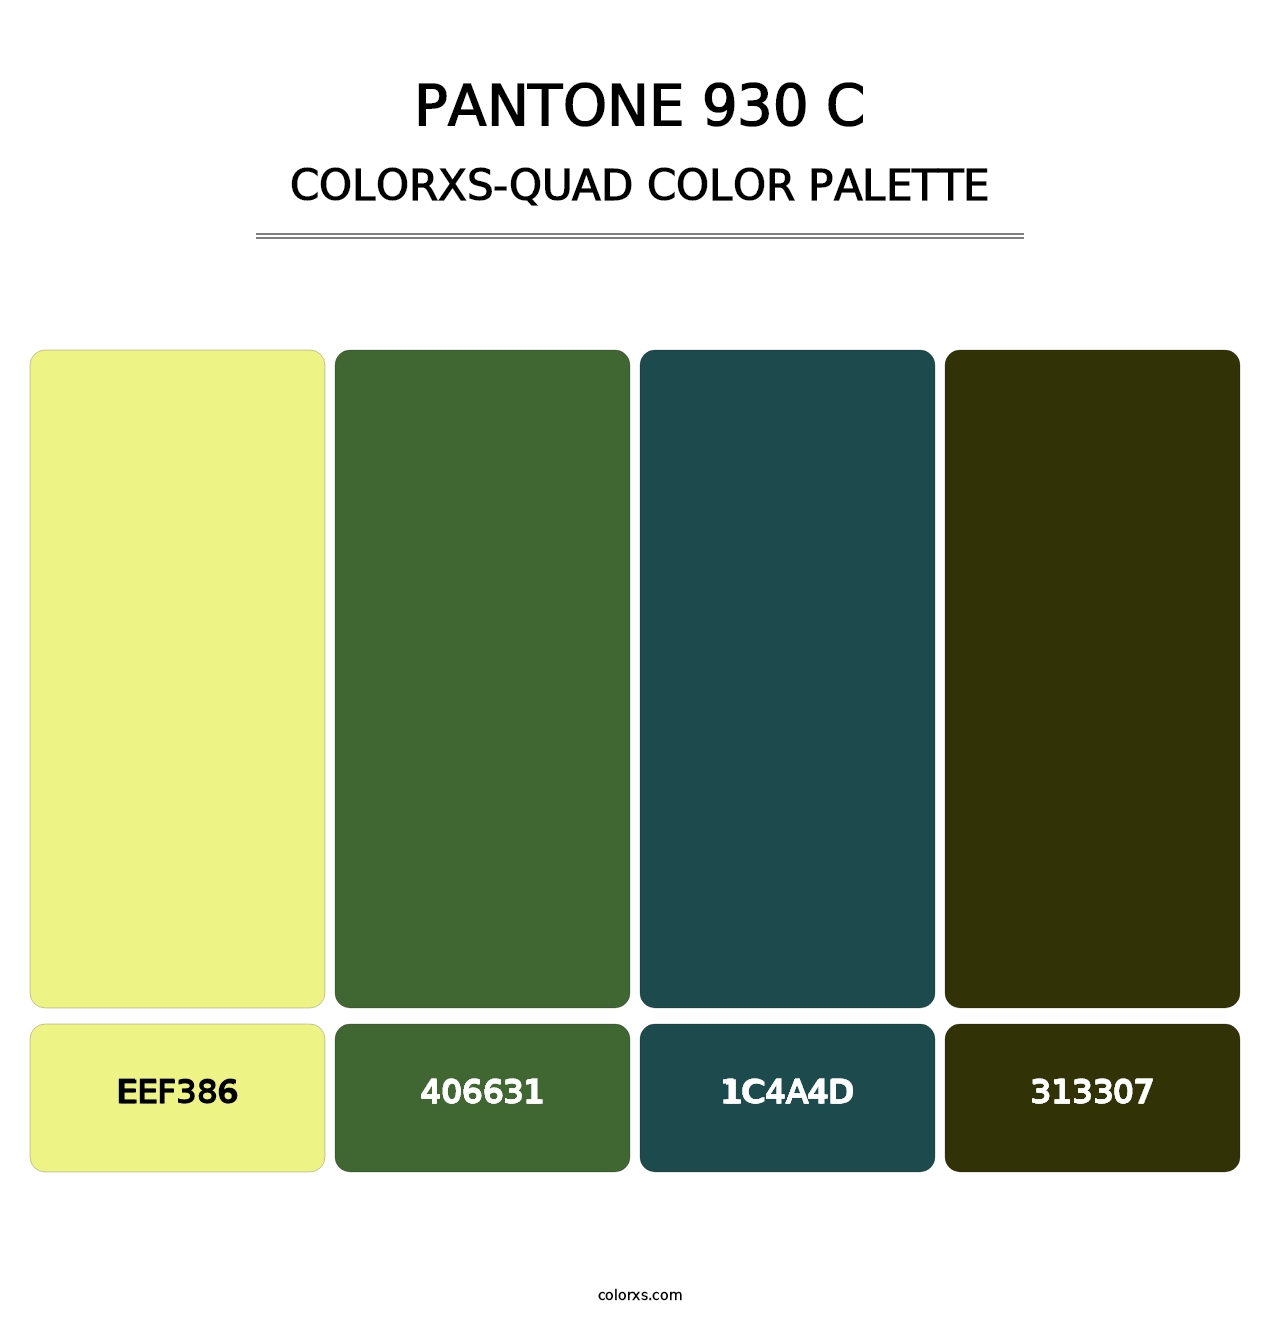 PANTONE 930 C - Colorxs Quad Palette